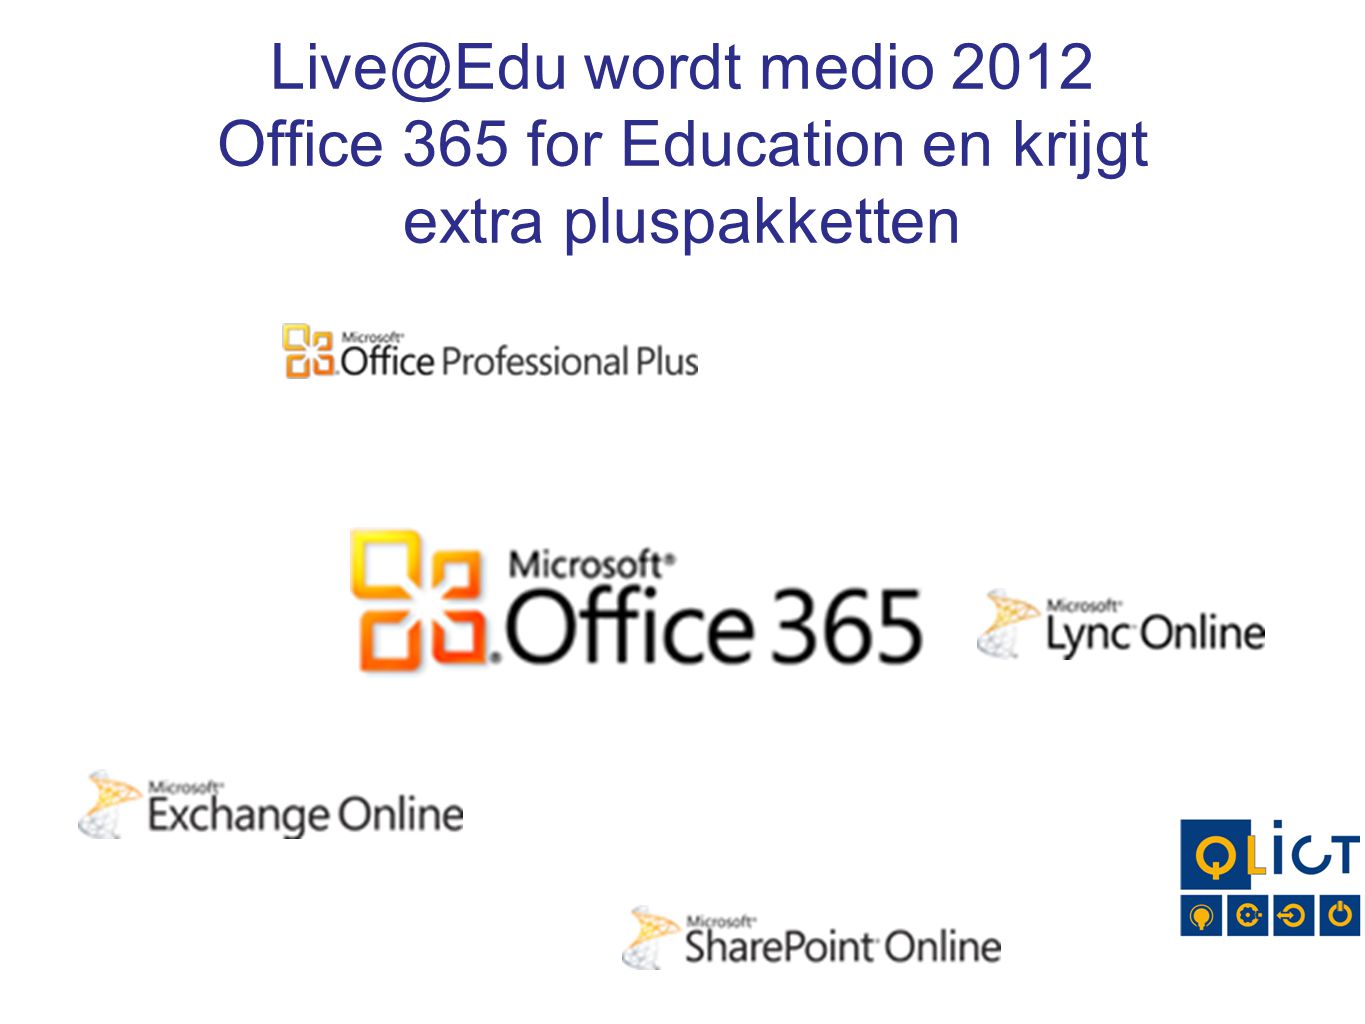 wordt medio 2012 Office 365 for Education en krijgt extra pluspakketten